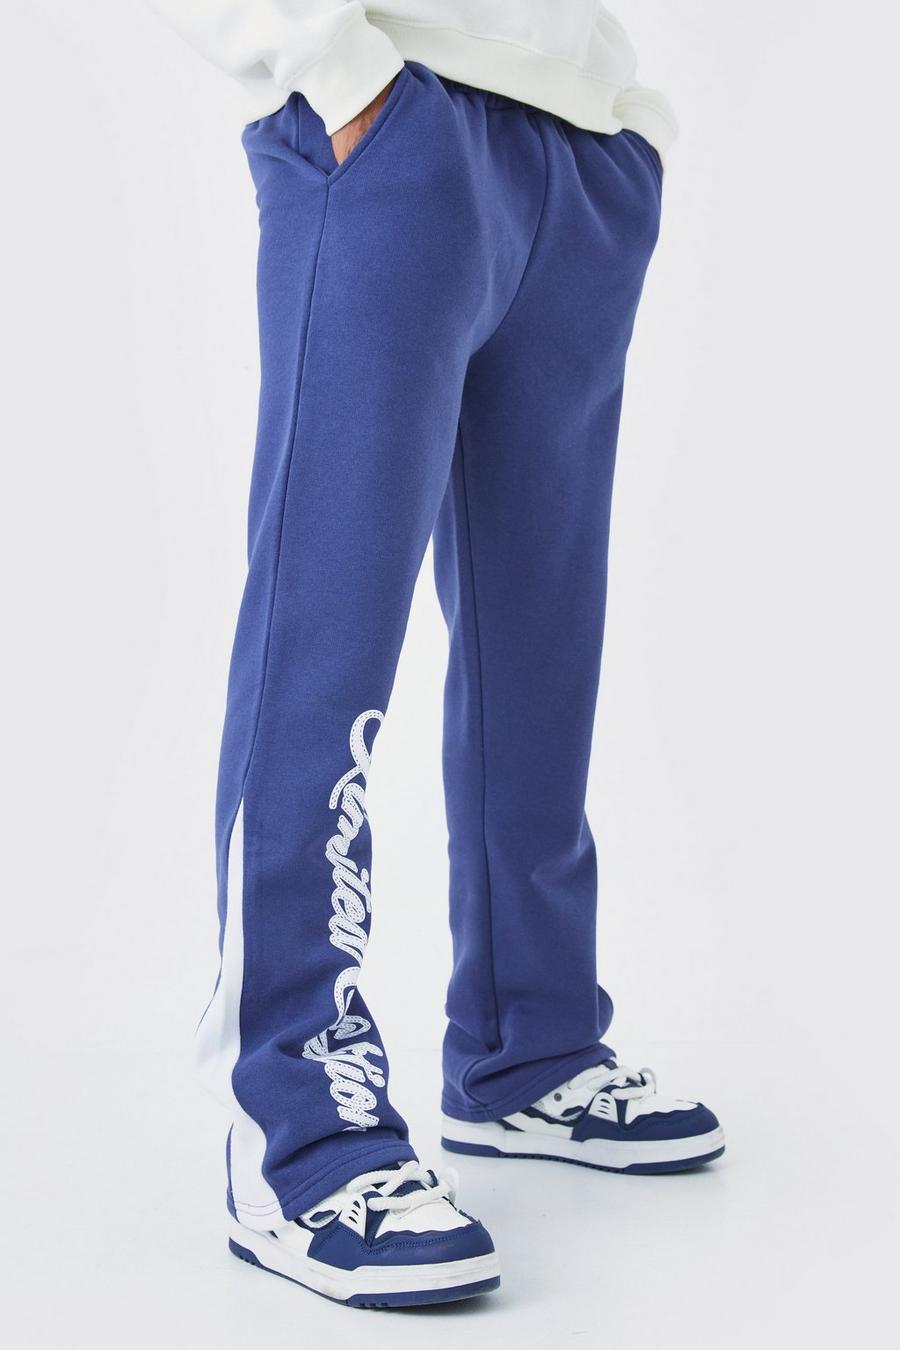 Pantaloni tuta Limited Edition con inserti e scritta, Slate blue